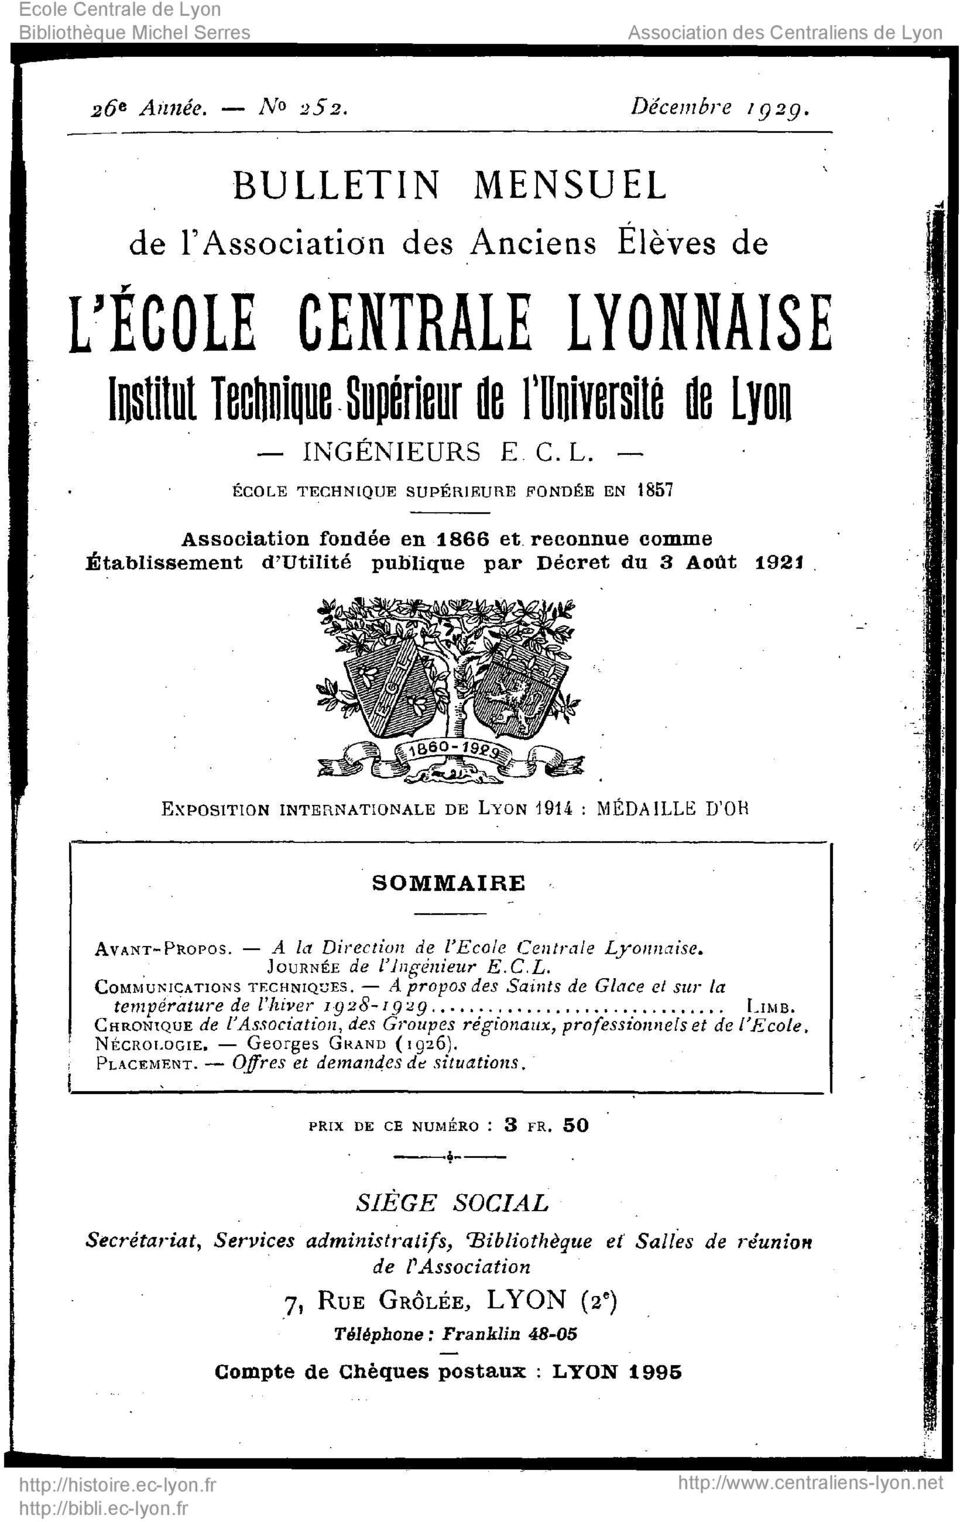 D'OH SOMMAIRE AVANT-PROPOS. A la Direction de l'ecole Centrale Lyonnaise. JOURNÉE de l'ingénieur E.C.L. COMMUNICATIONS TECHNIQUES.